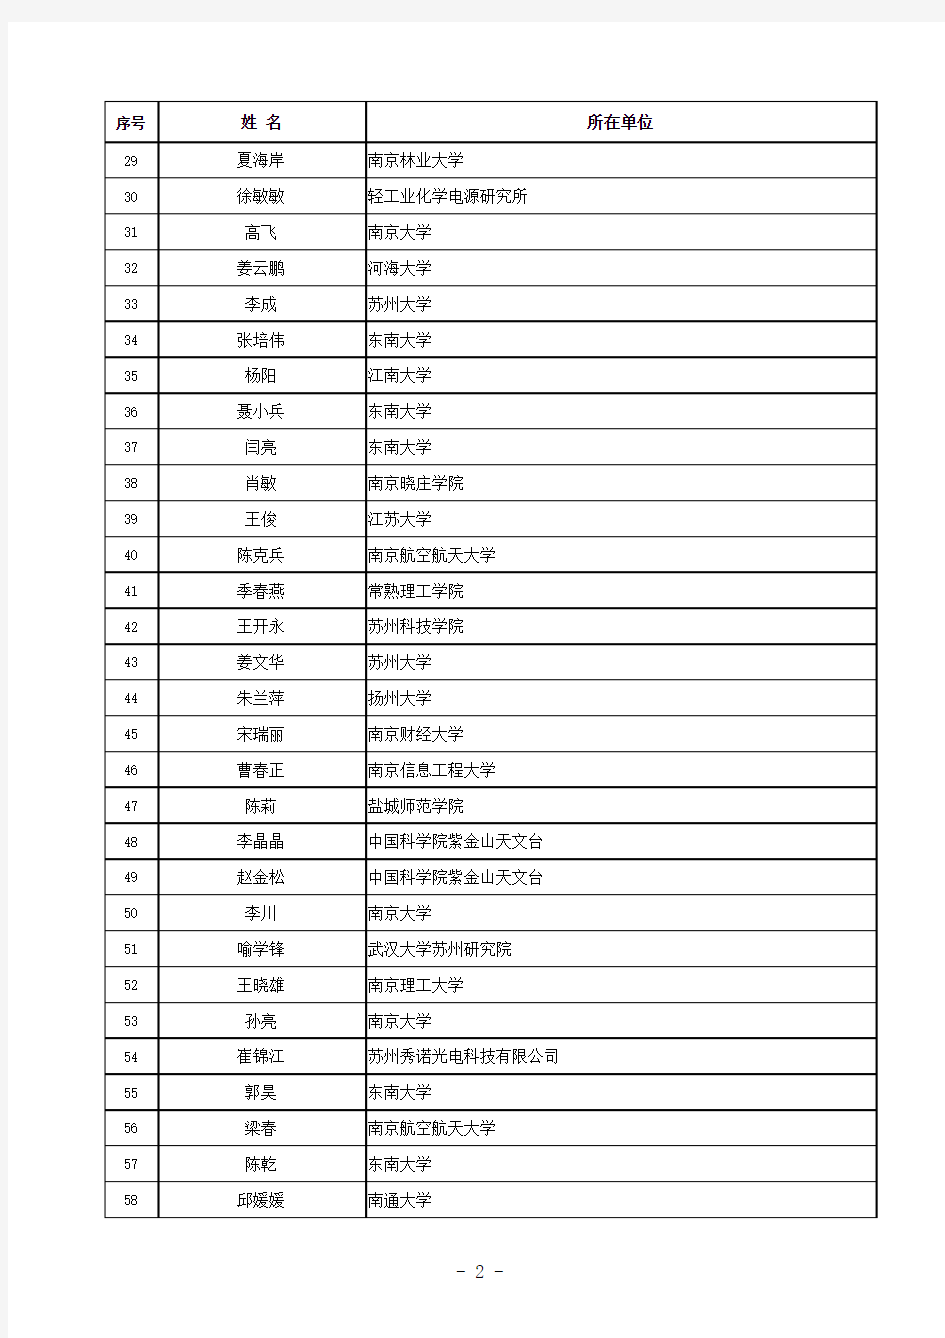 2012年江苏省自然科学基金青年基金获得者名单